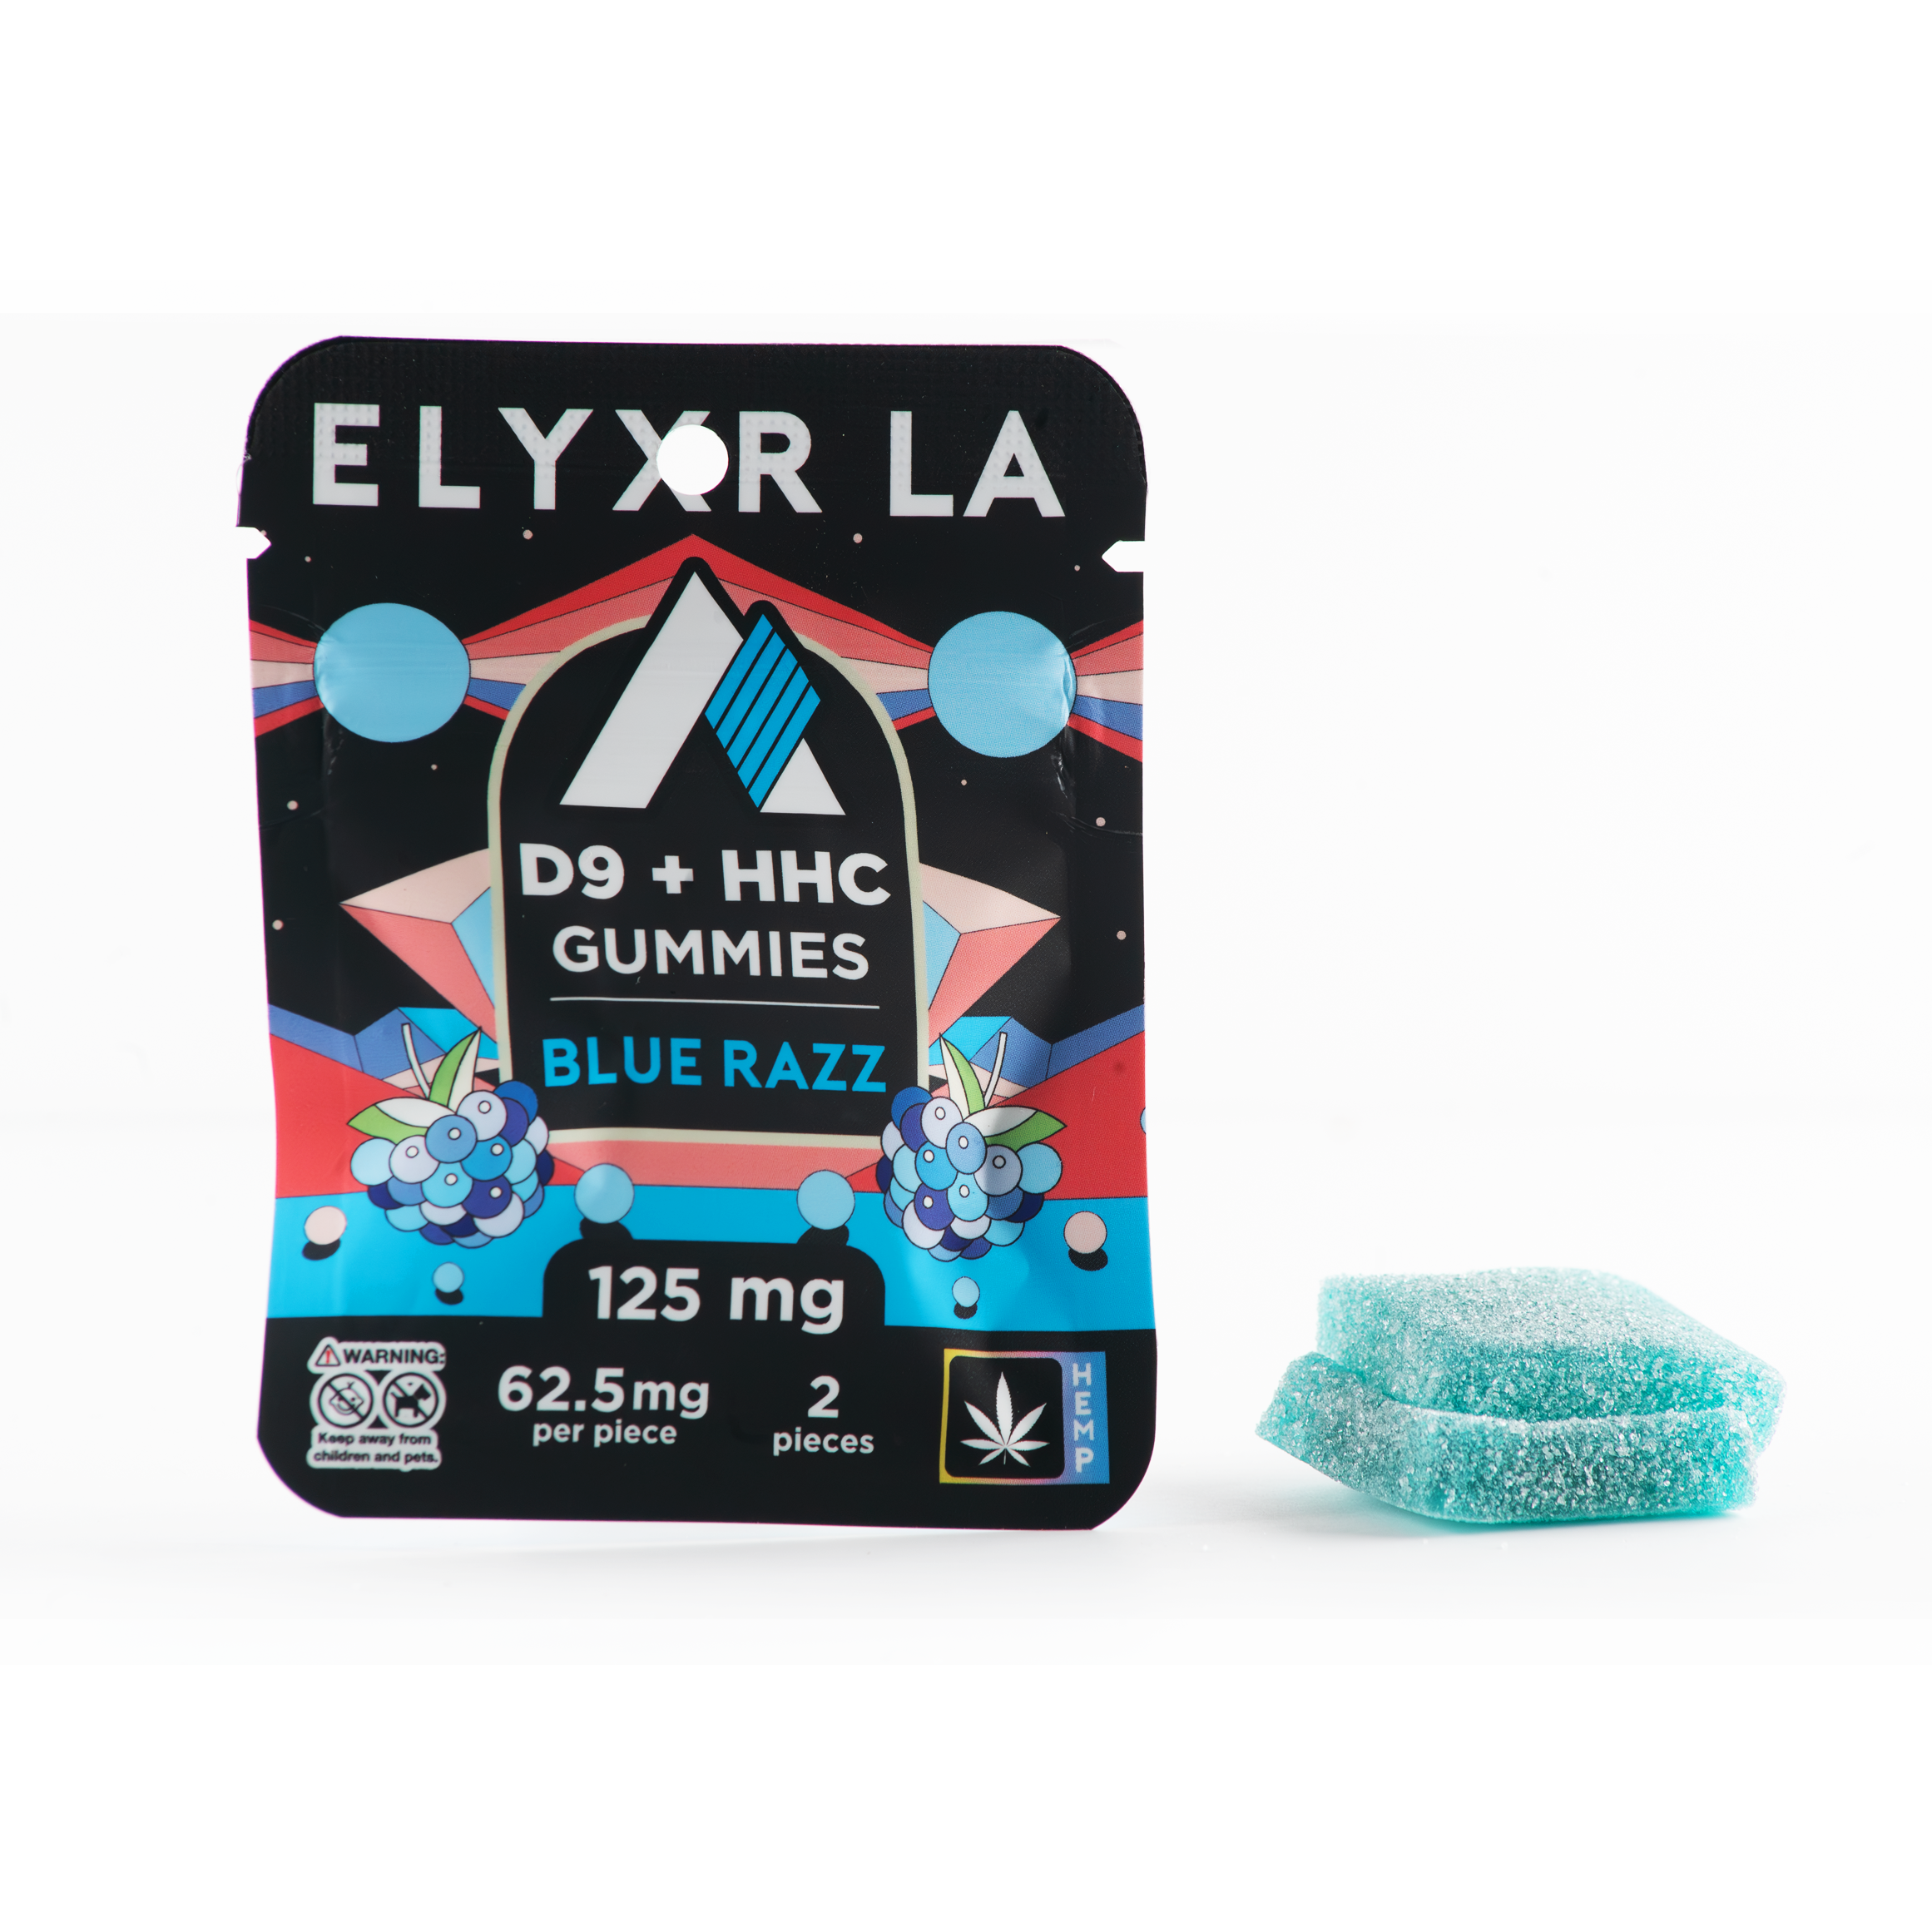 Elyxr Delta 9/HHC Gummies (125mg) 2 Pack Best Price